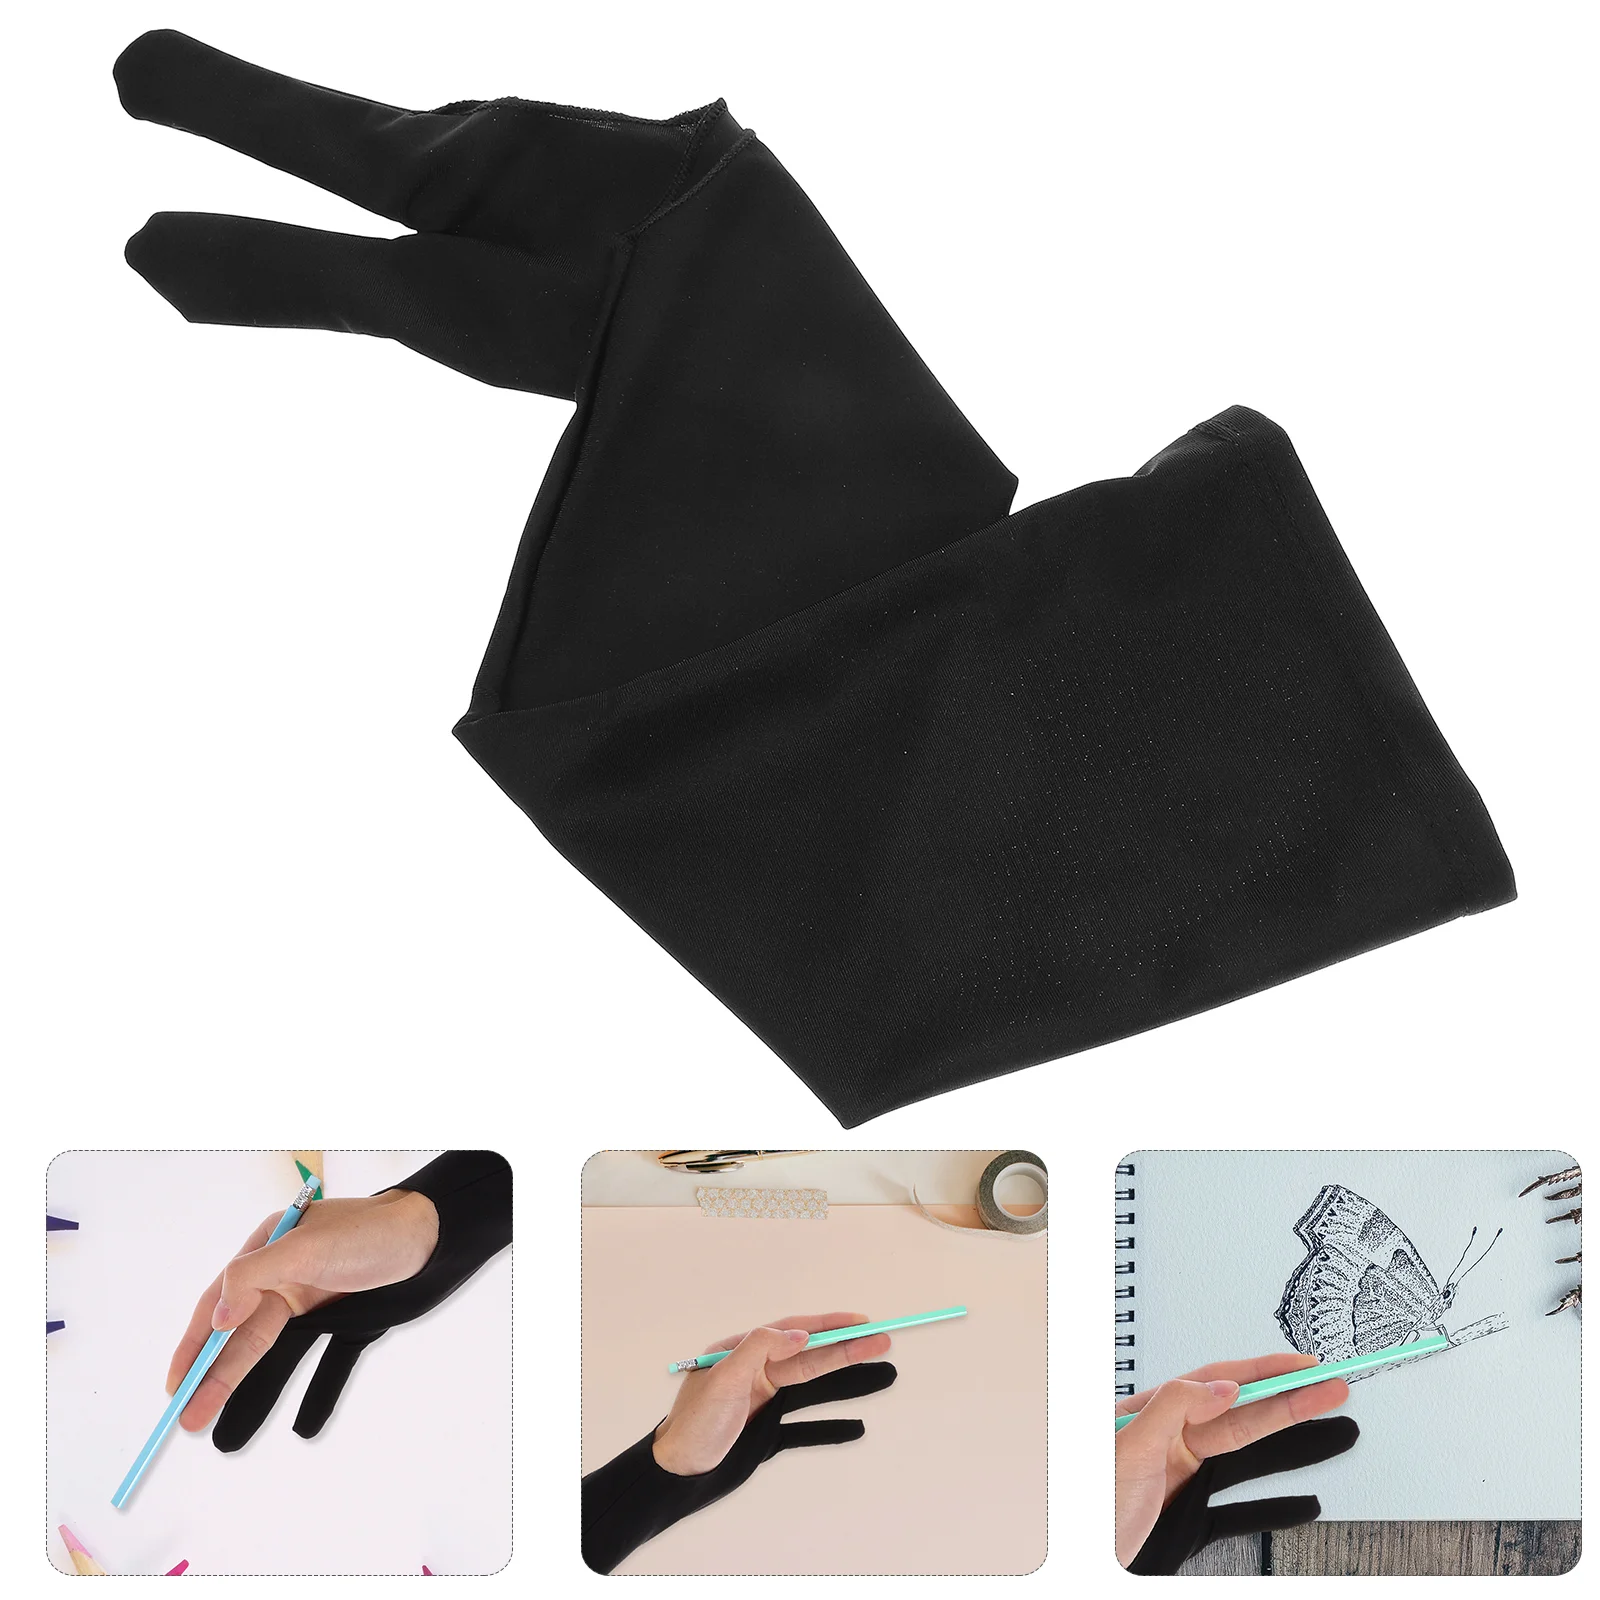 

Защитные перчатки для покраски свинцовые карандаши для рисования планшета из полиэстера с двумя пальцами